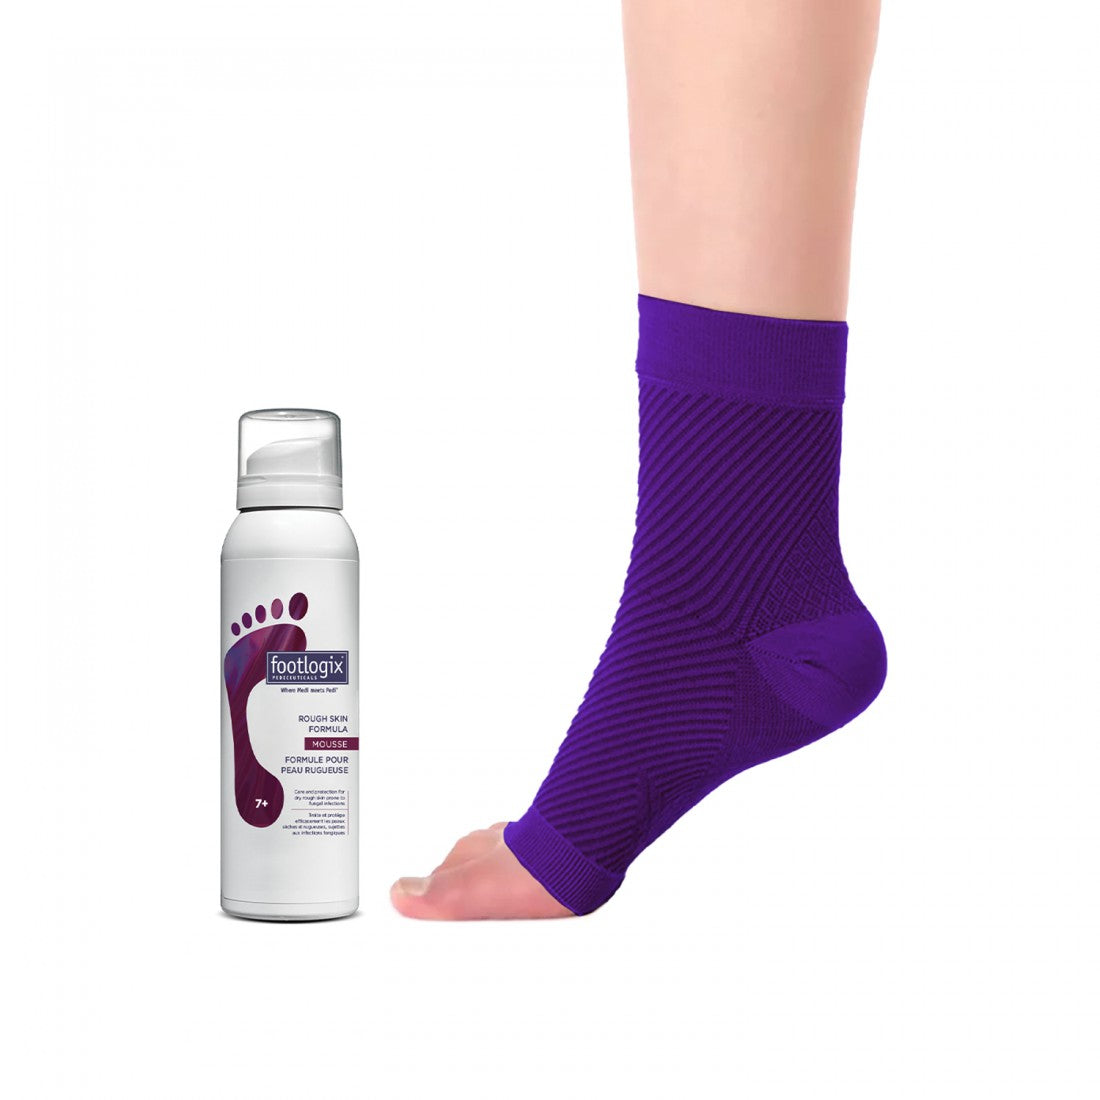 Footlogix | Rough Skin voet mousse tegen ruwe, jeukende voeten en voetschimmel